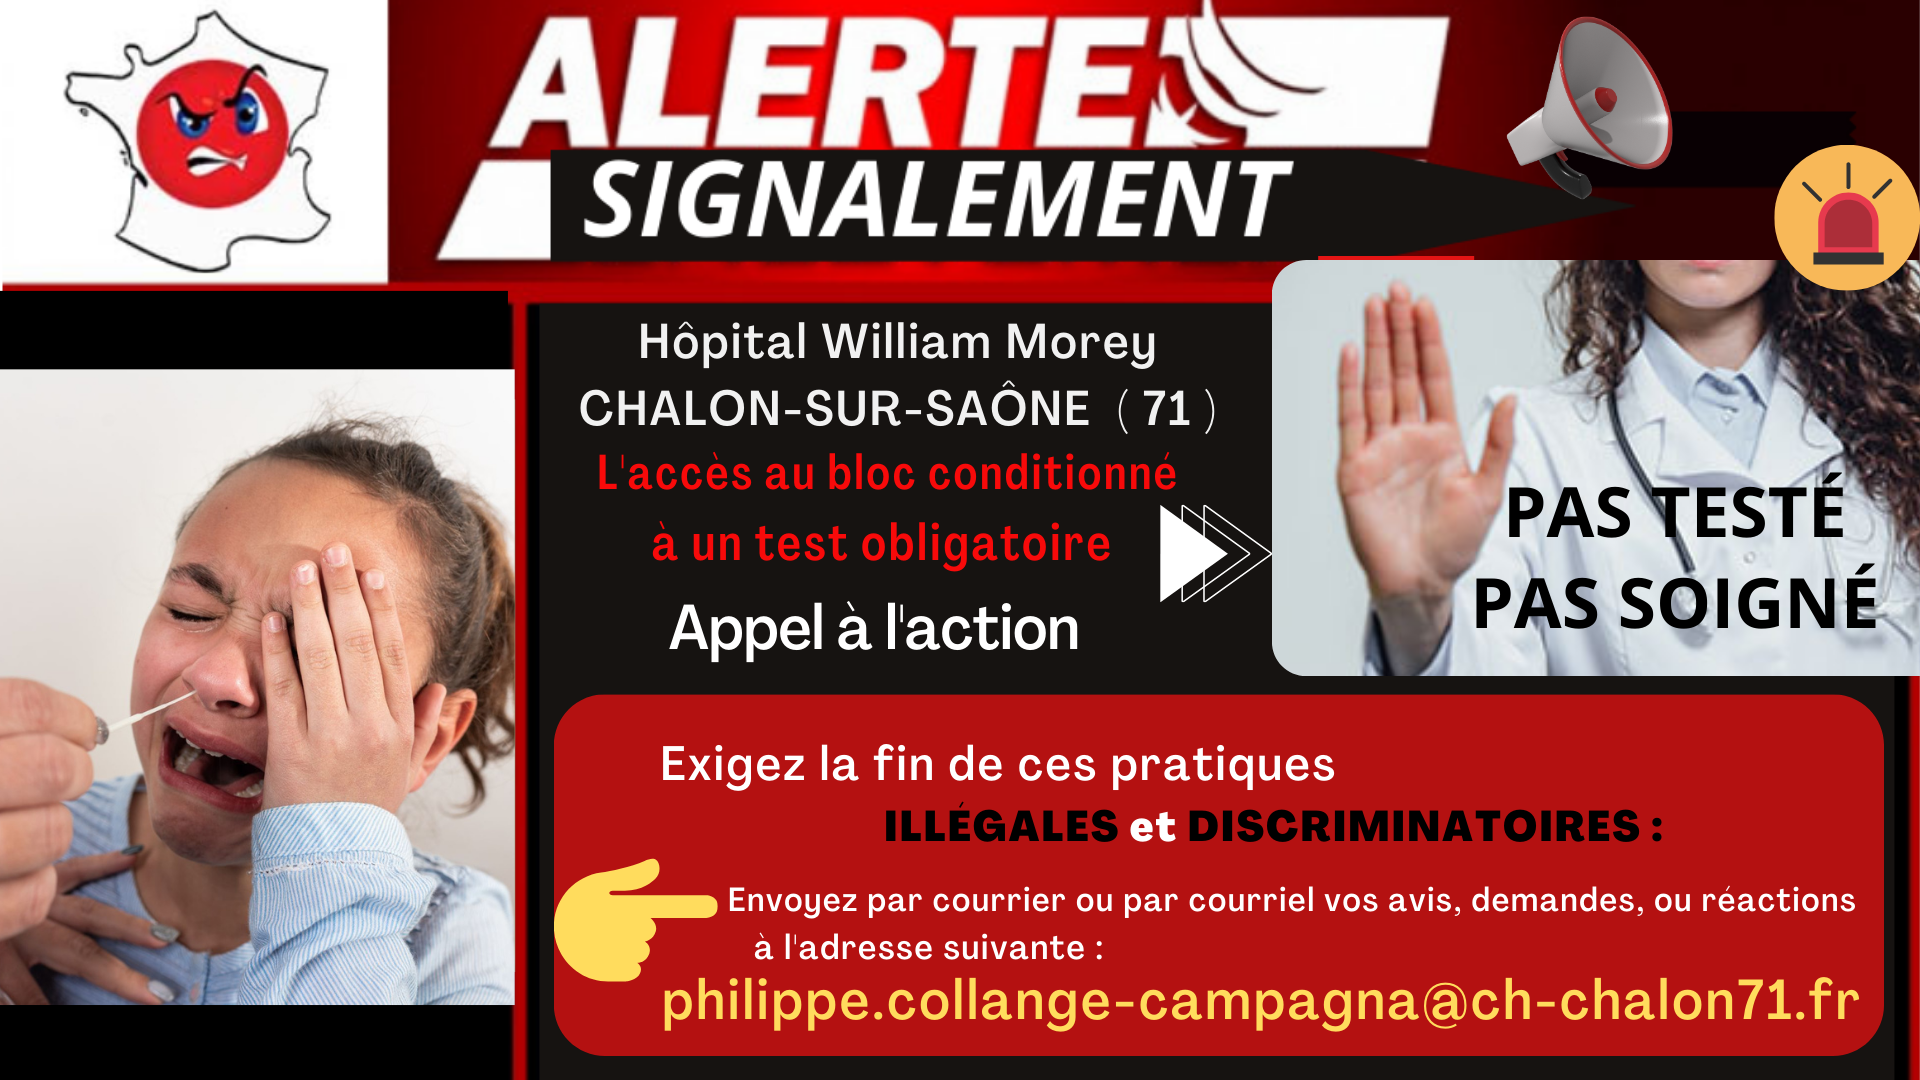 Alerte signalements Test Hôpitaux Bourgogne Franche Comté